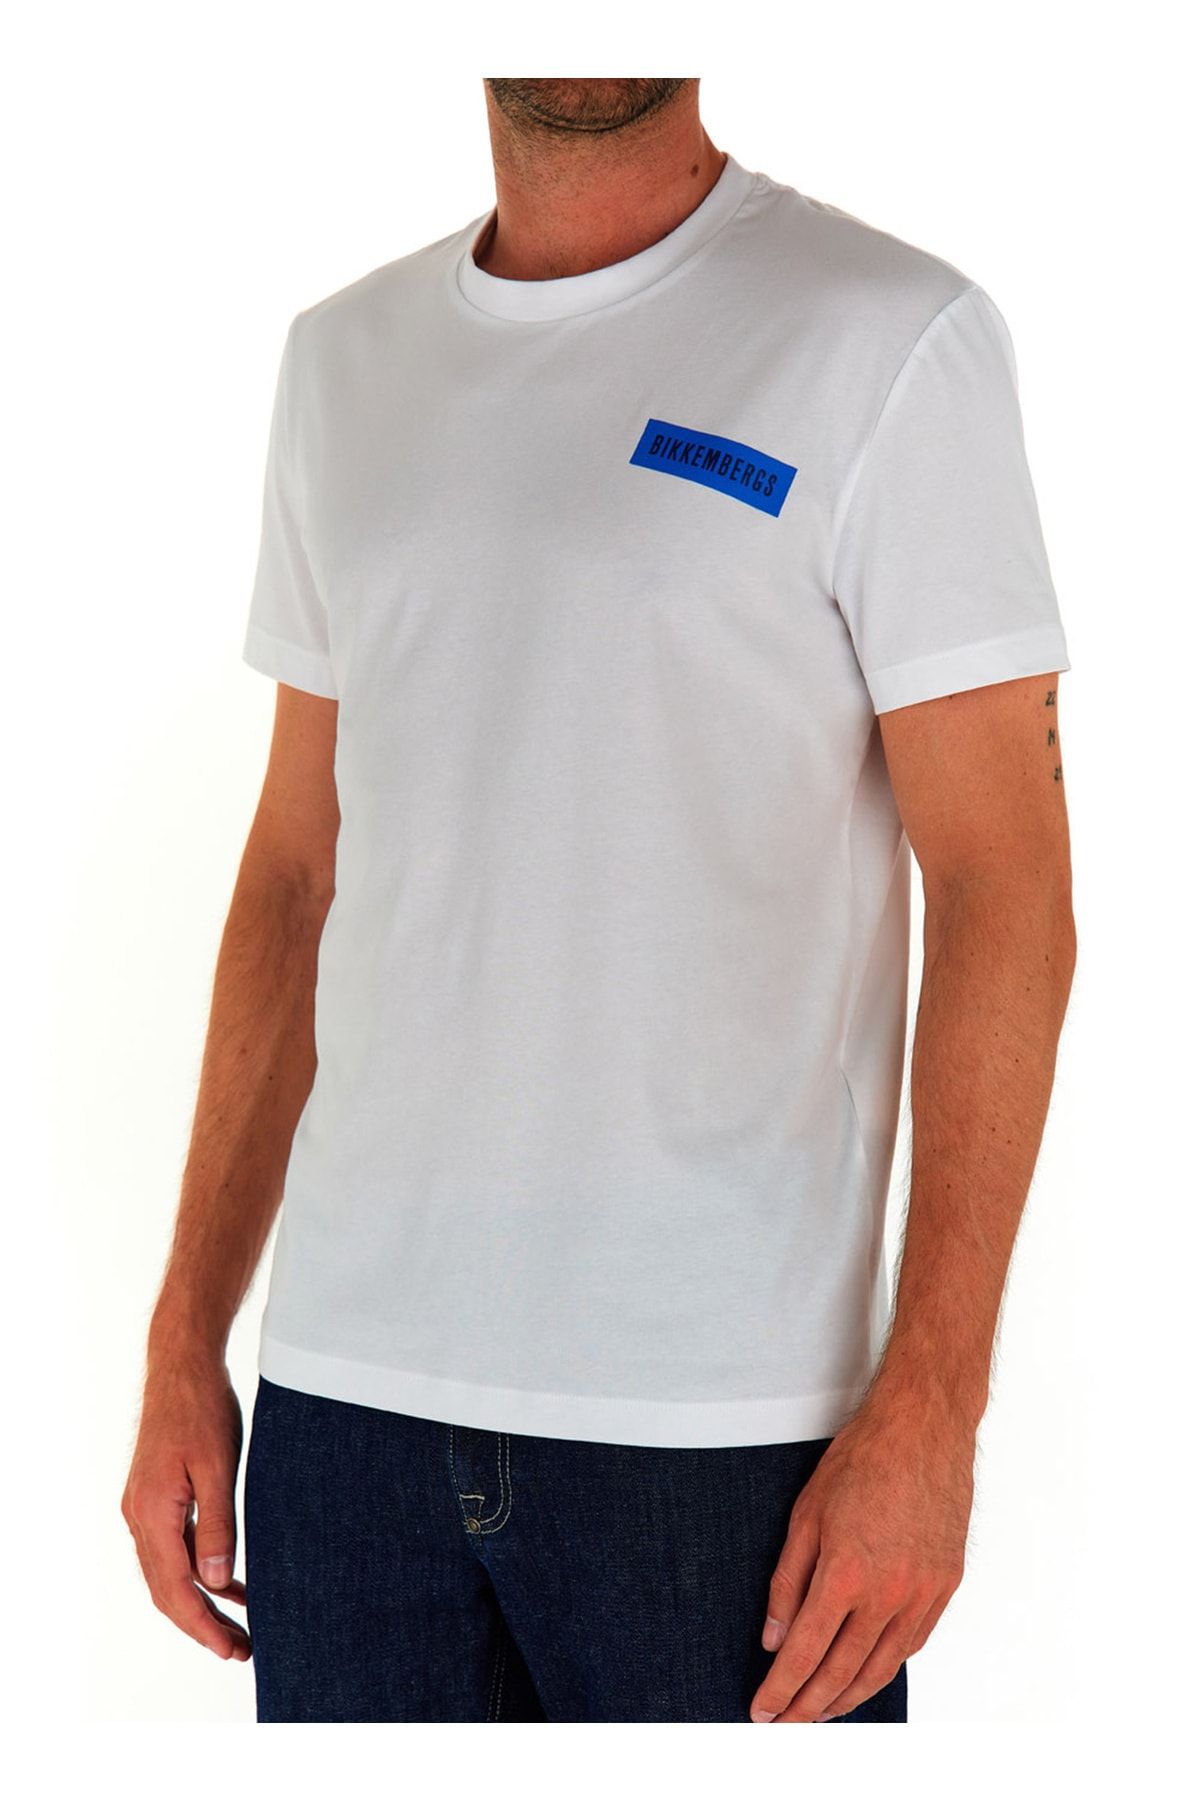 Bikkembergs Beyaz Erkek T-Shirt C 4 101 3G